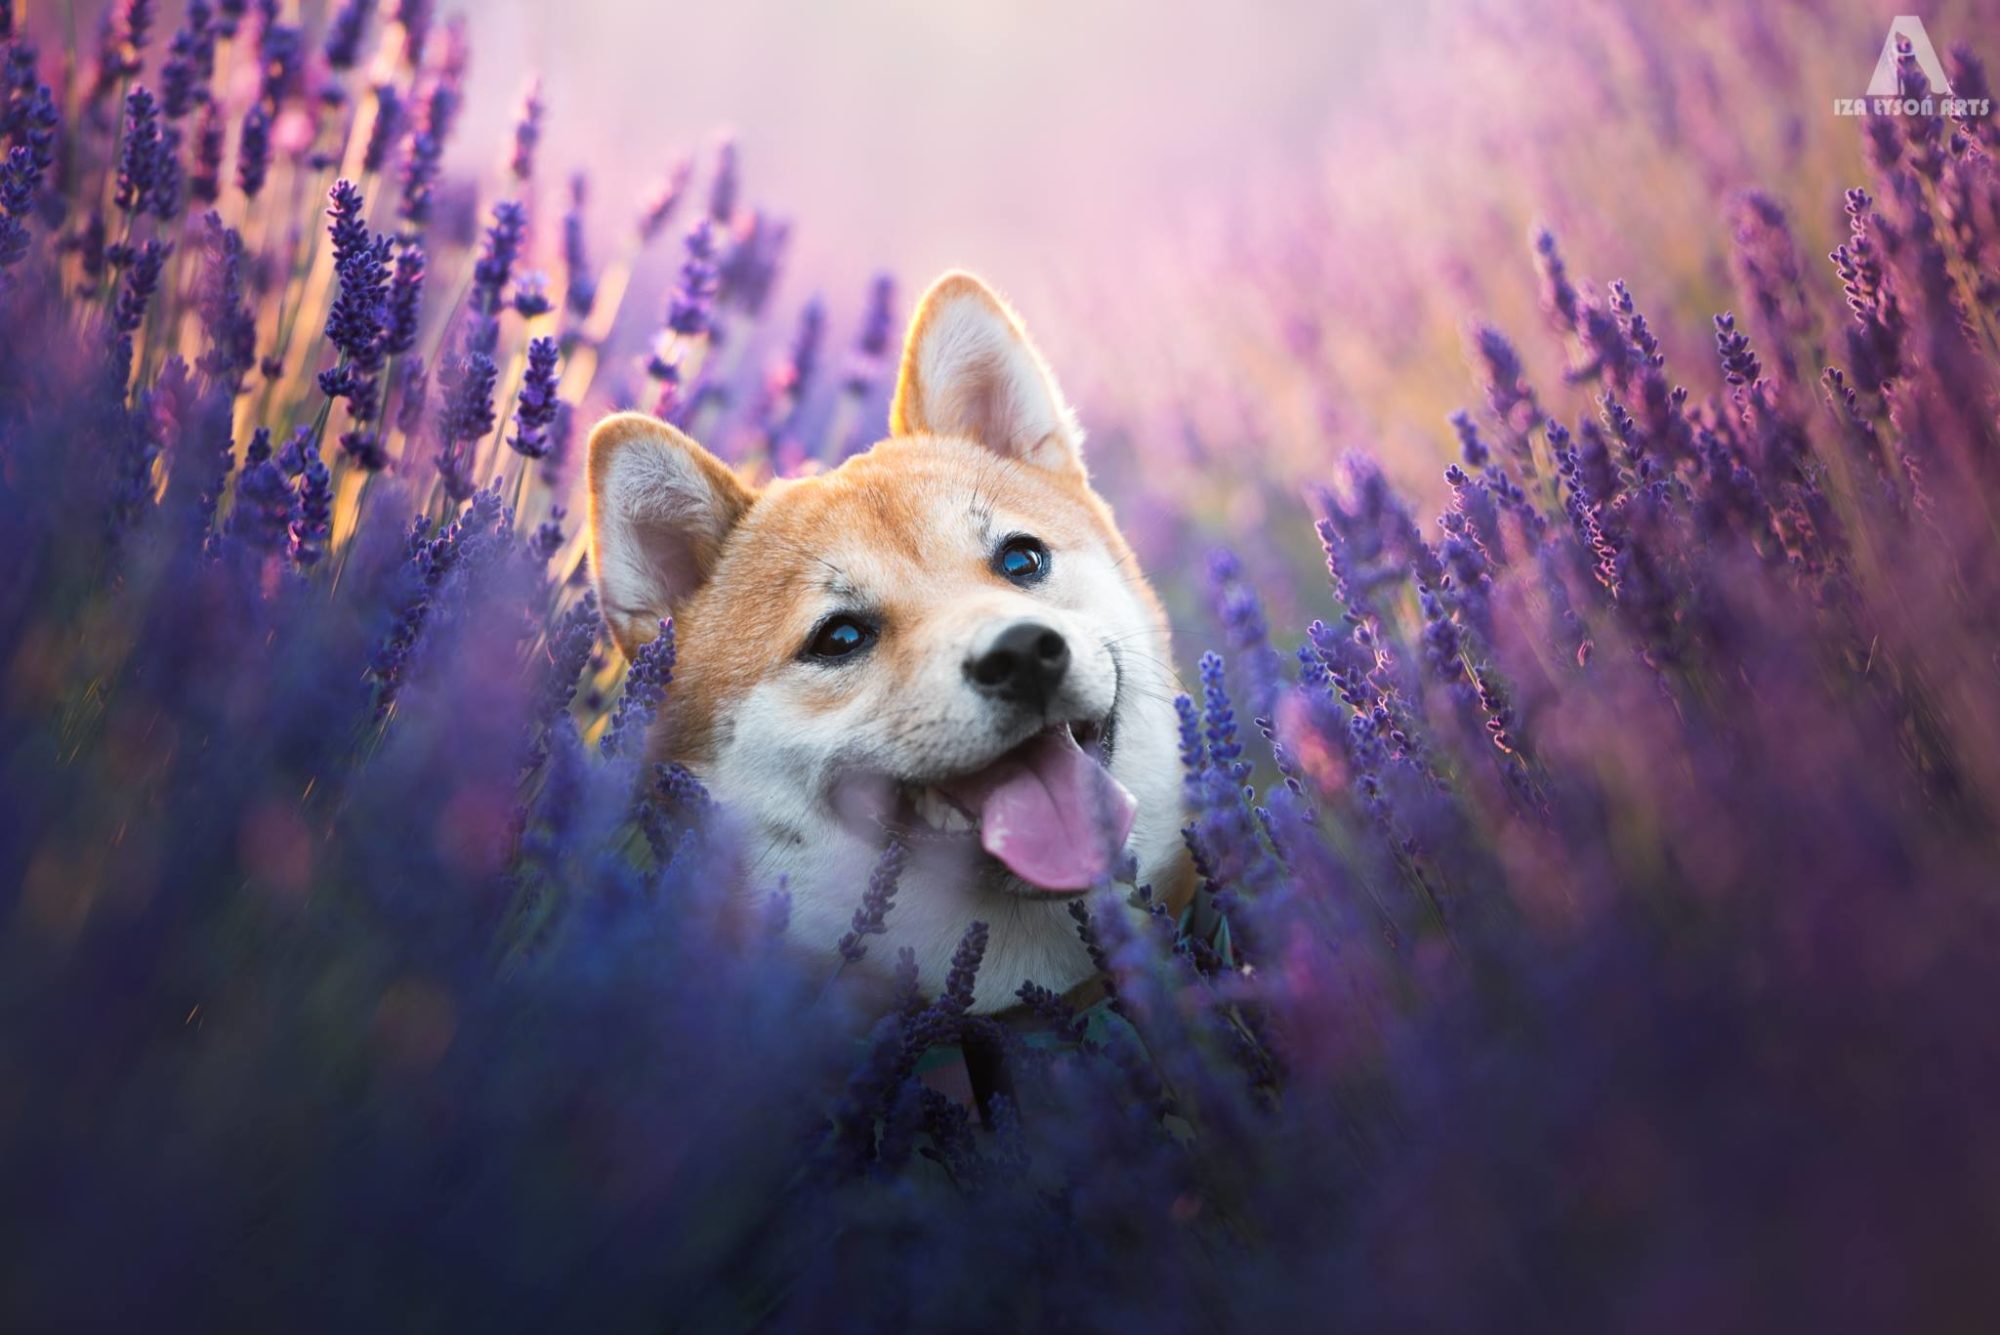 Dog in lavender